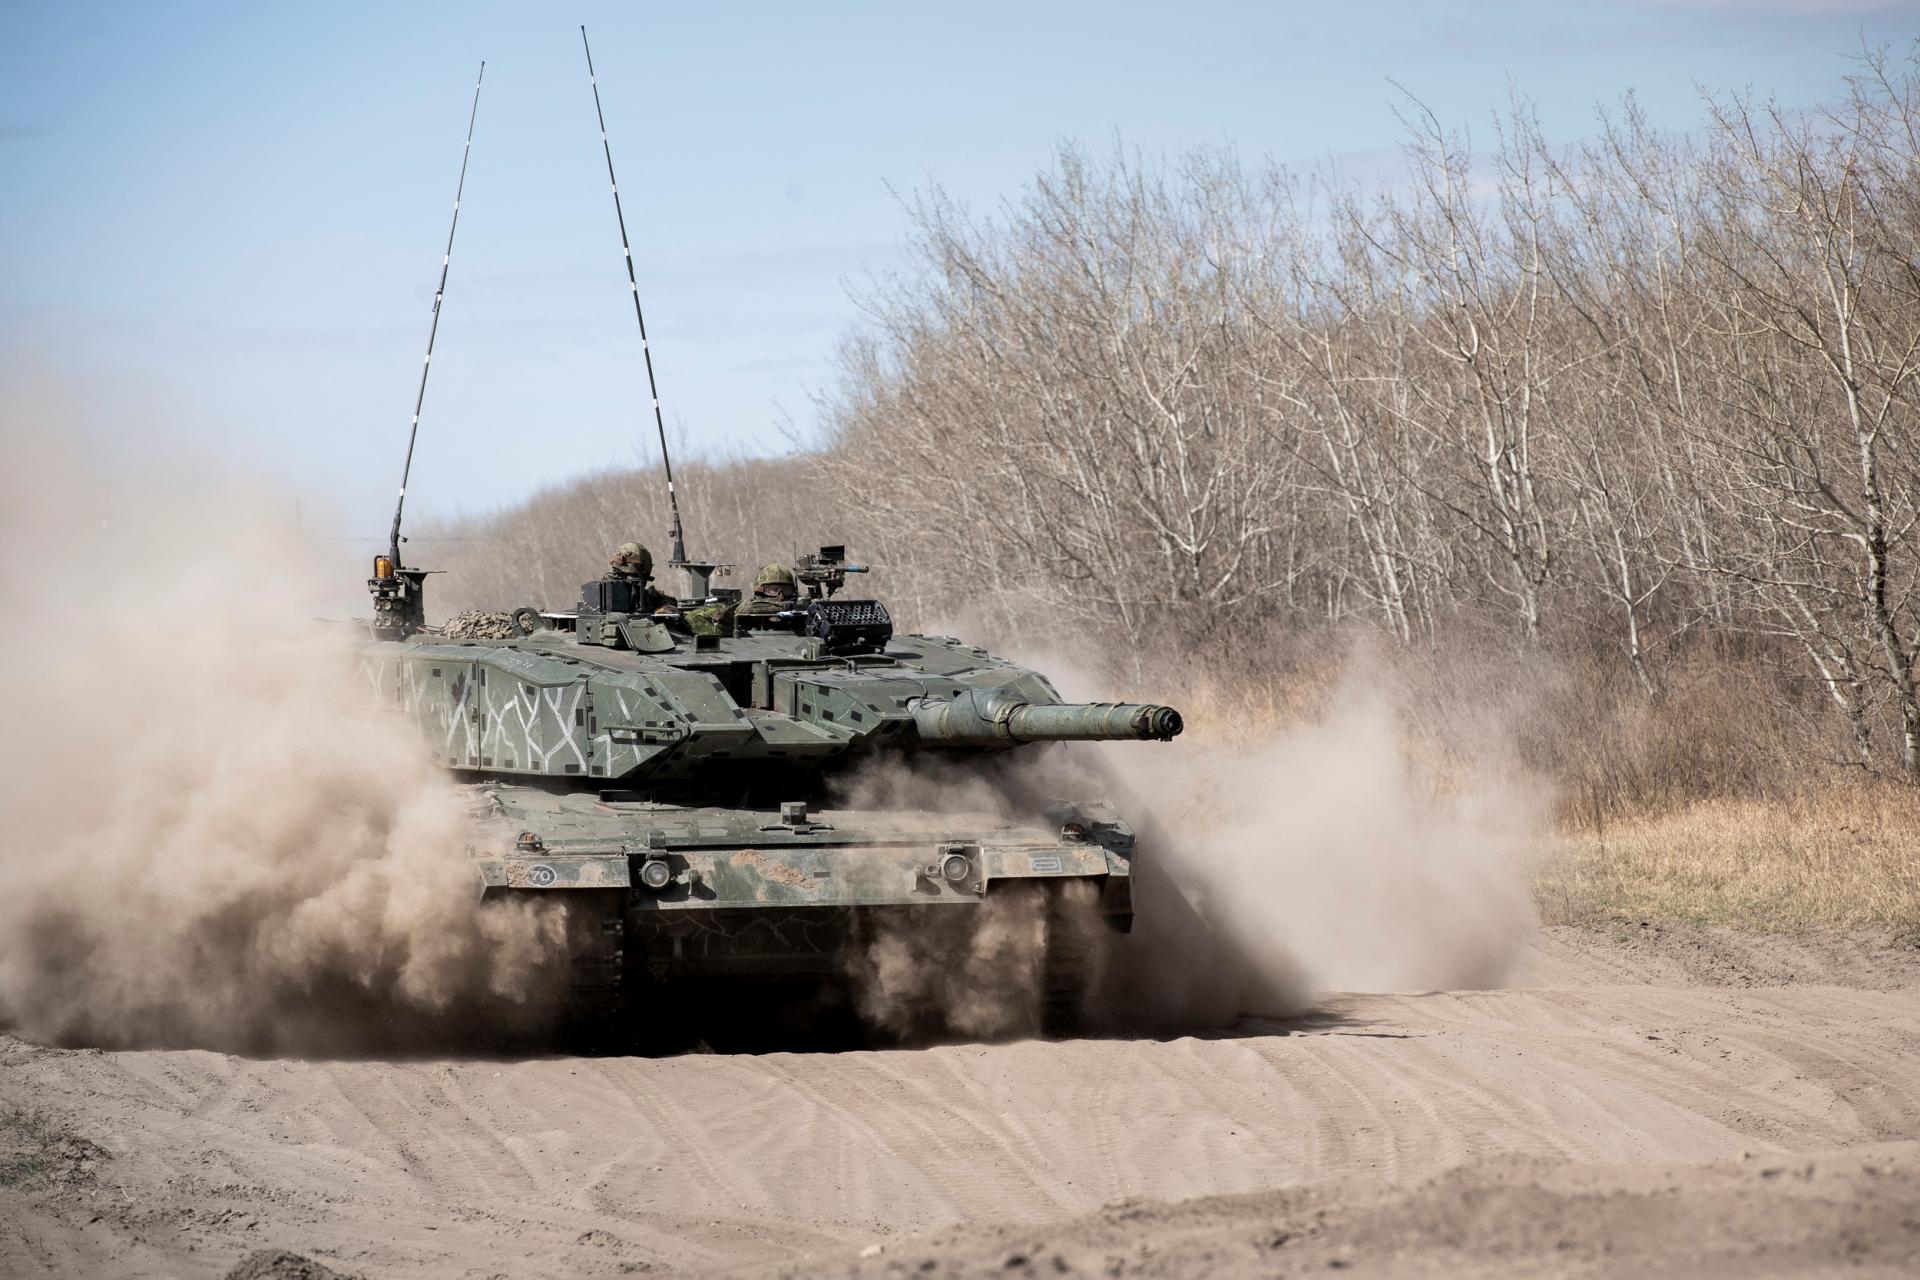 Milióny rubľov za zničenie tankov Leopard či Abrams. Ruský región dal svojim vojakom lákavú ponuku